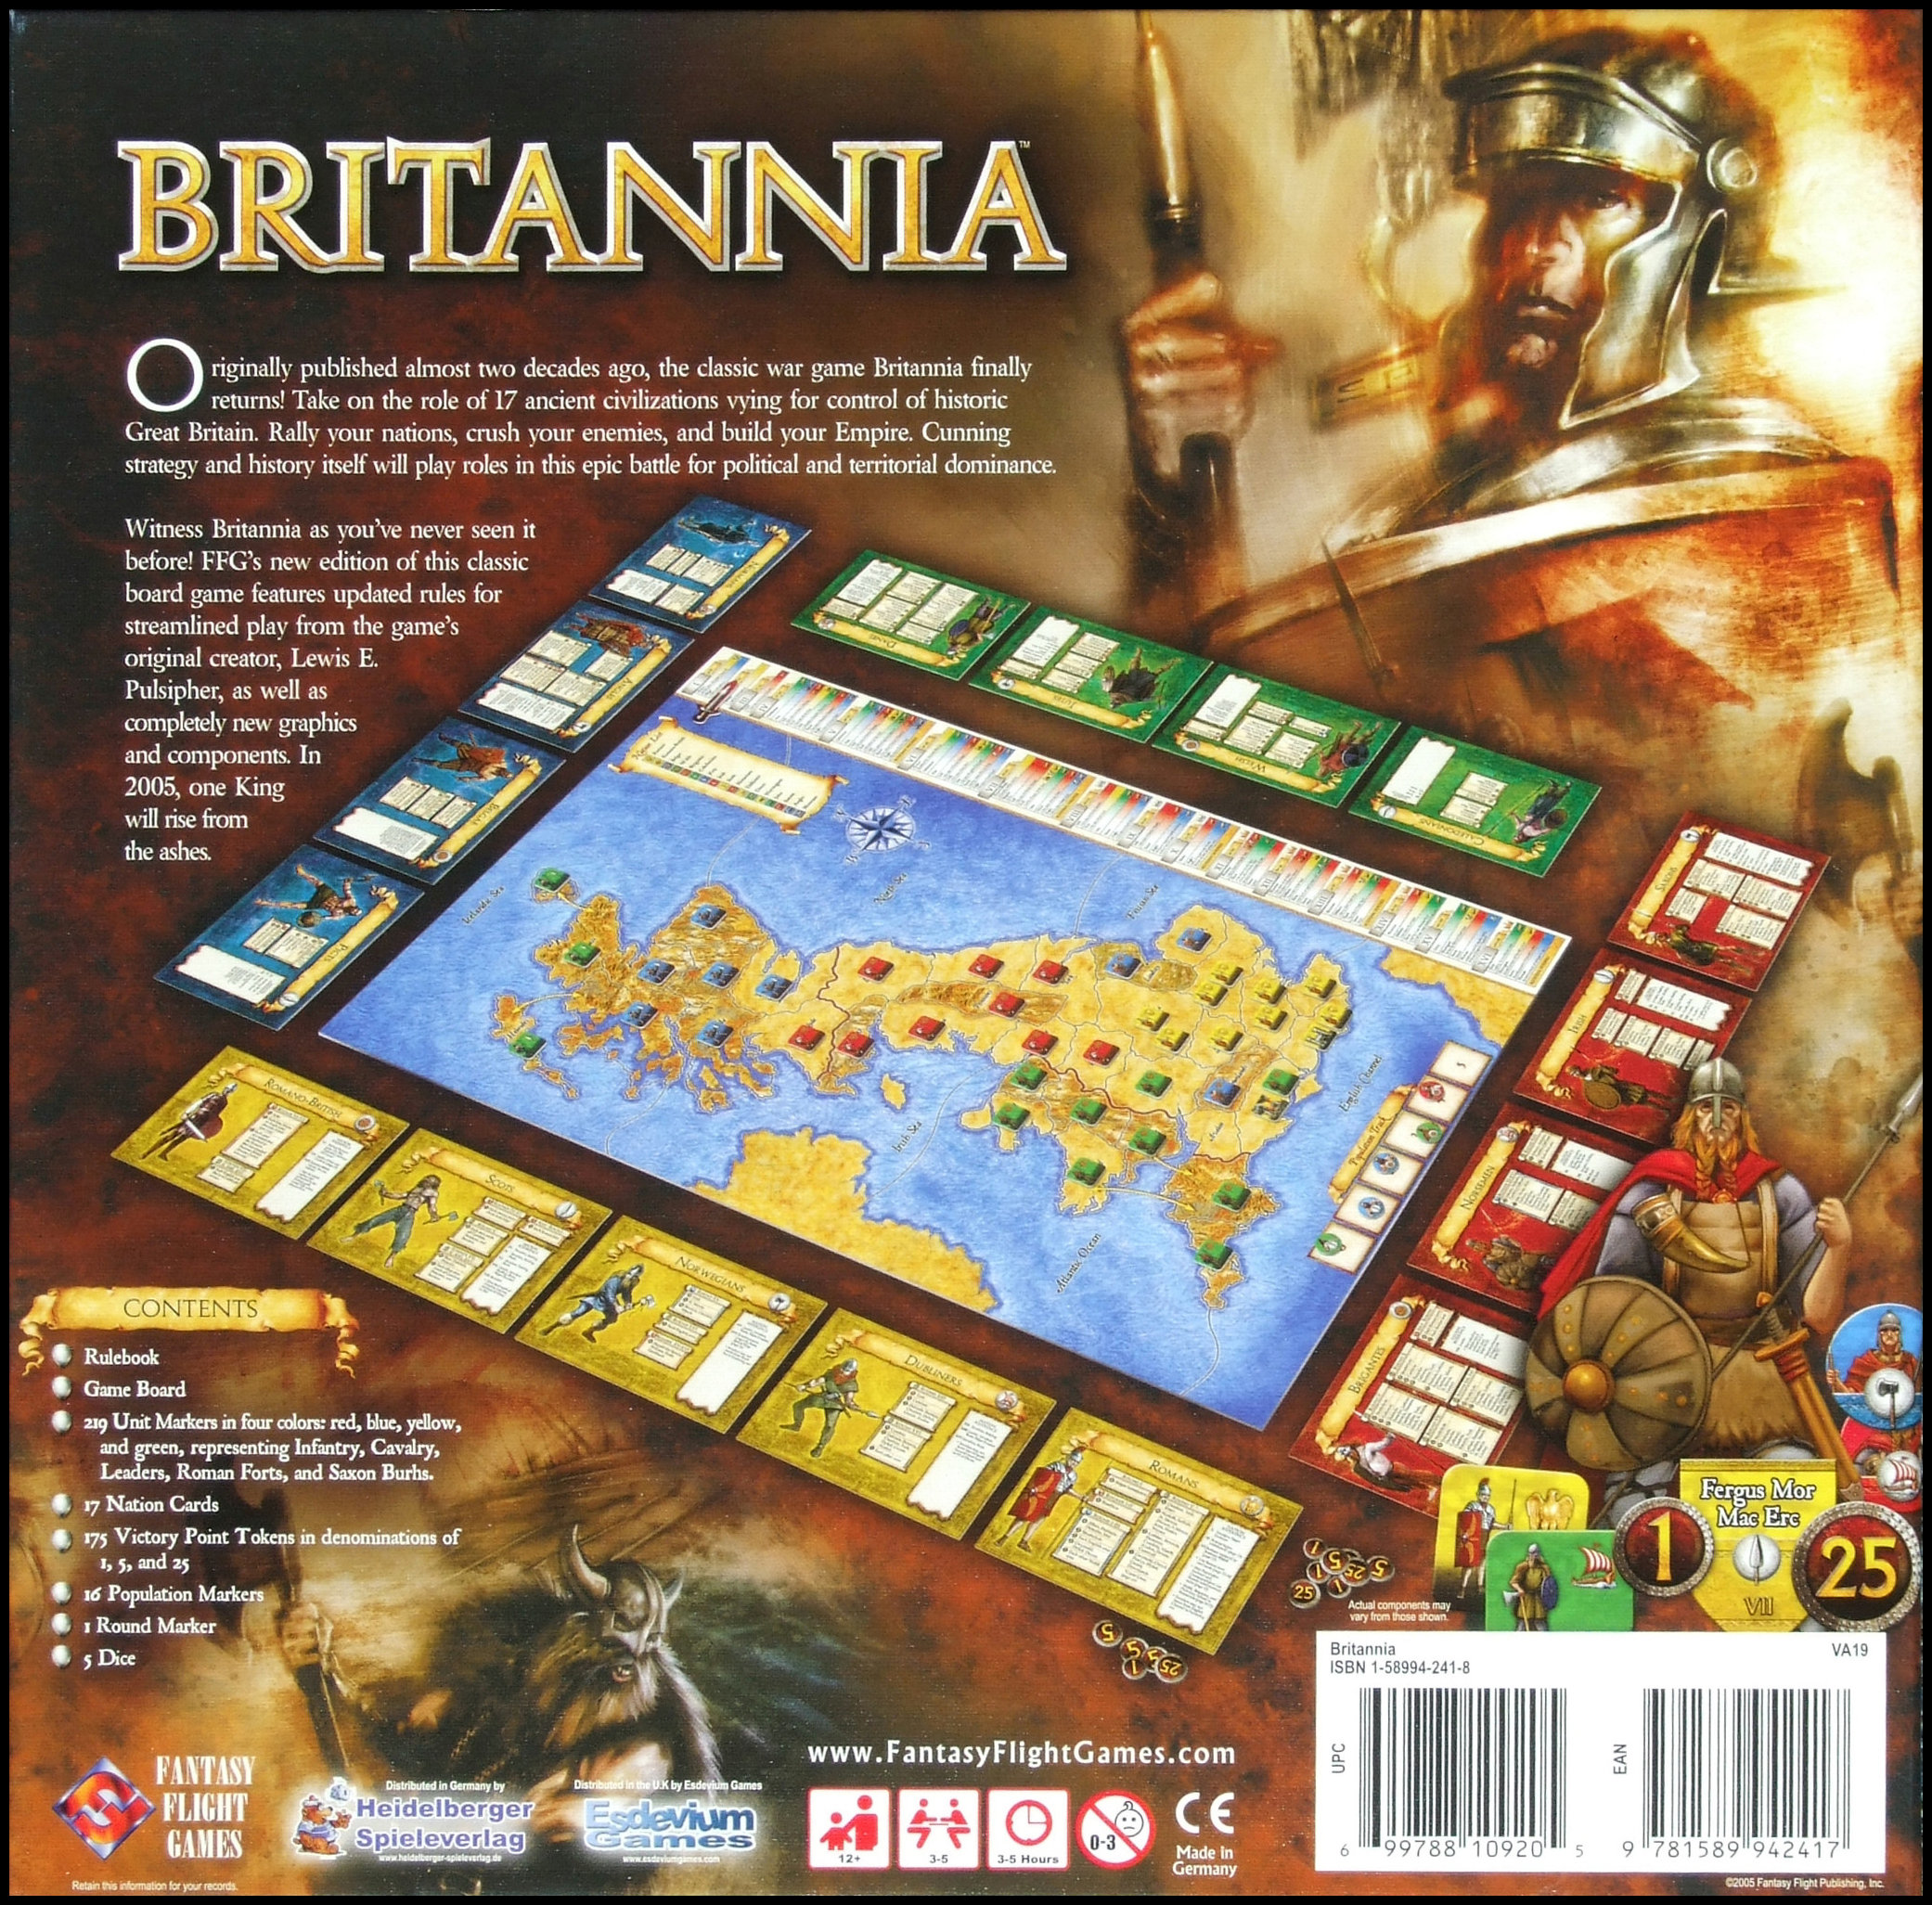 Britannia - The Back Of The Box